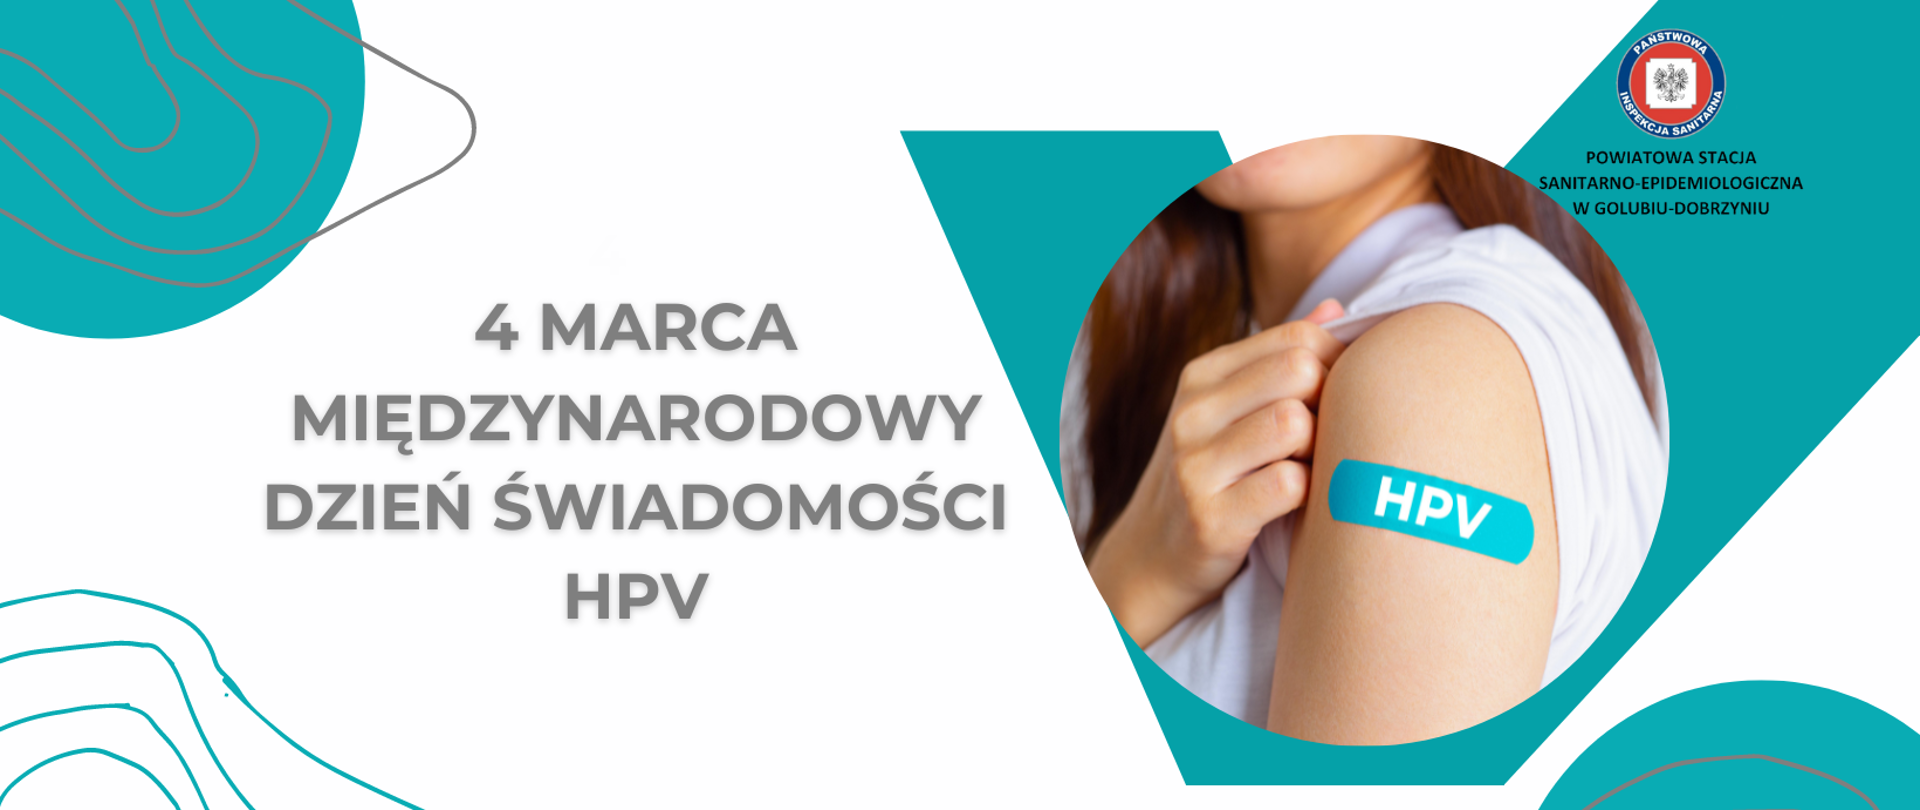 4 marca - Międzynarodowy Dzień Świadomości HPV